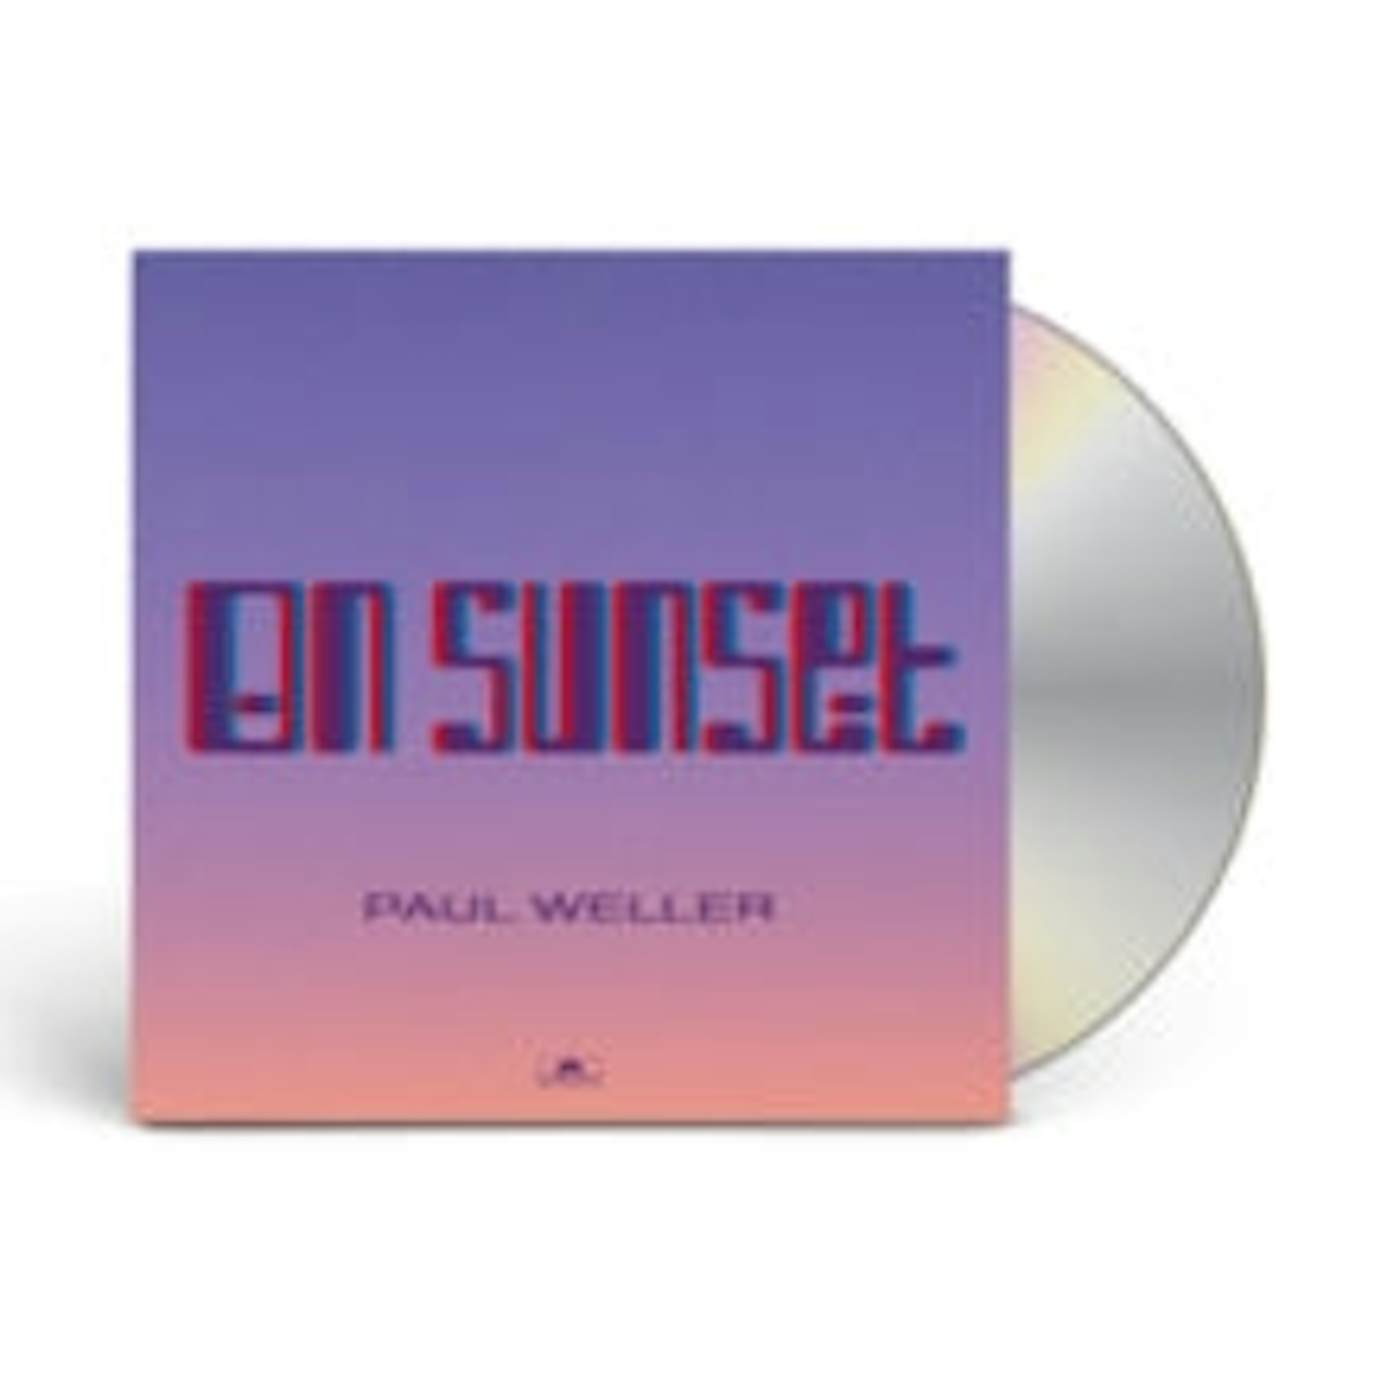 Paul Weller CD - On Sunset